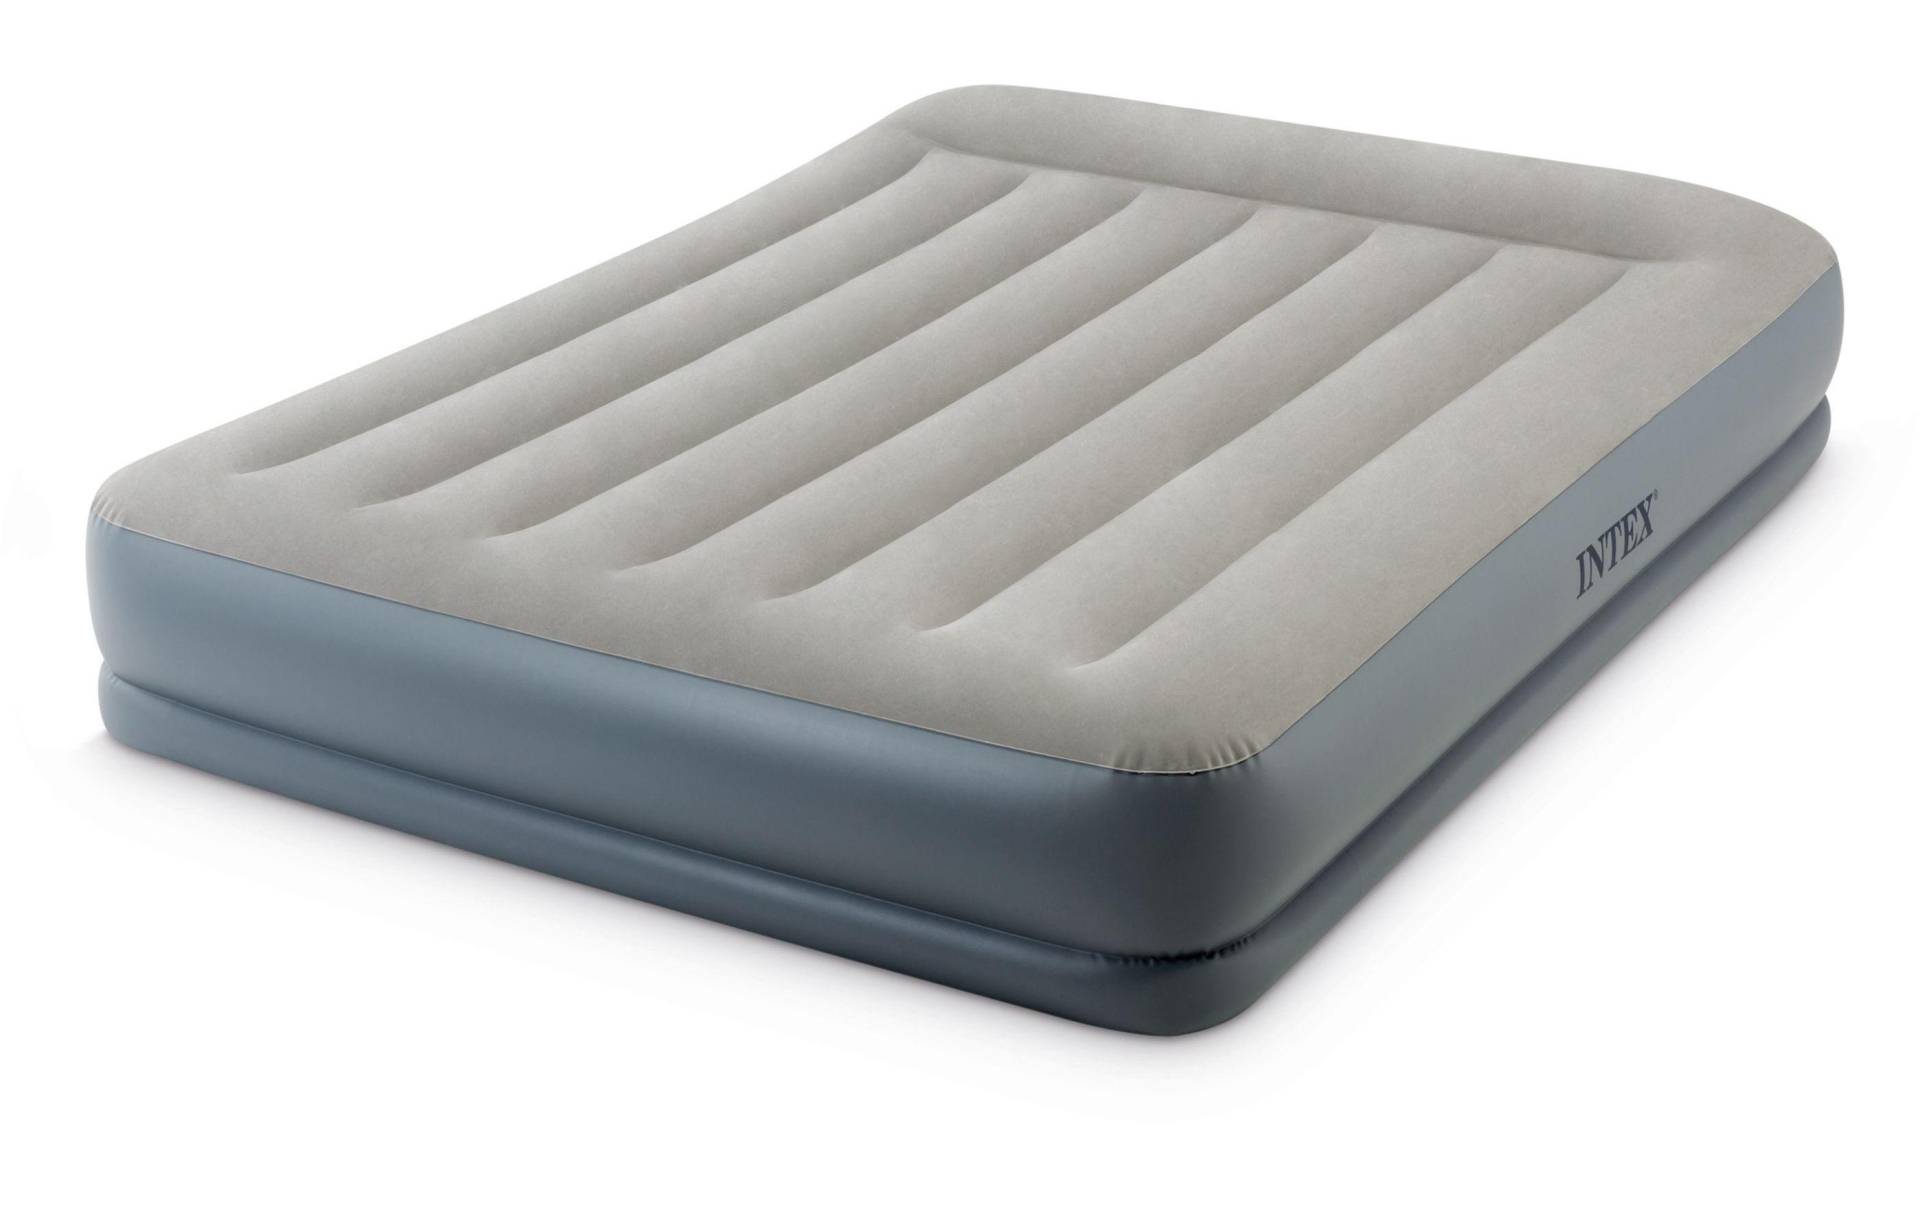 Intex Luftbett »DuraBeam Standard Pillow Rest MidRise Queen« von Intex